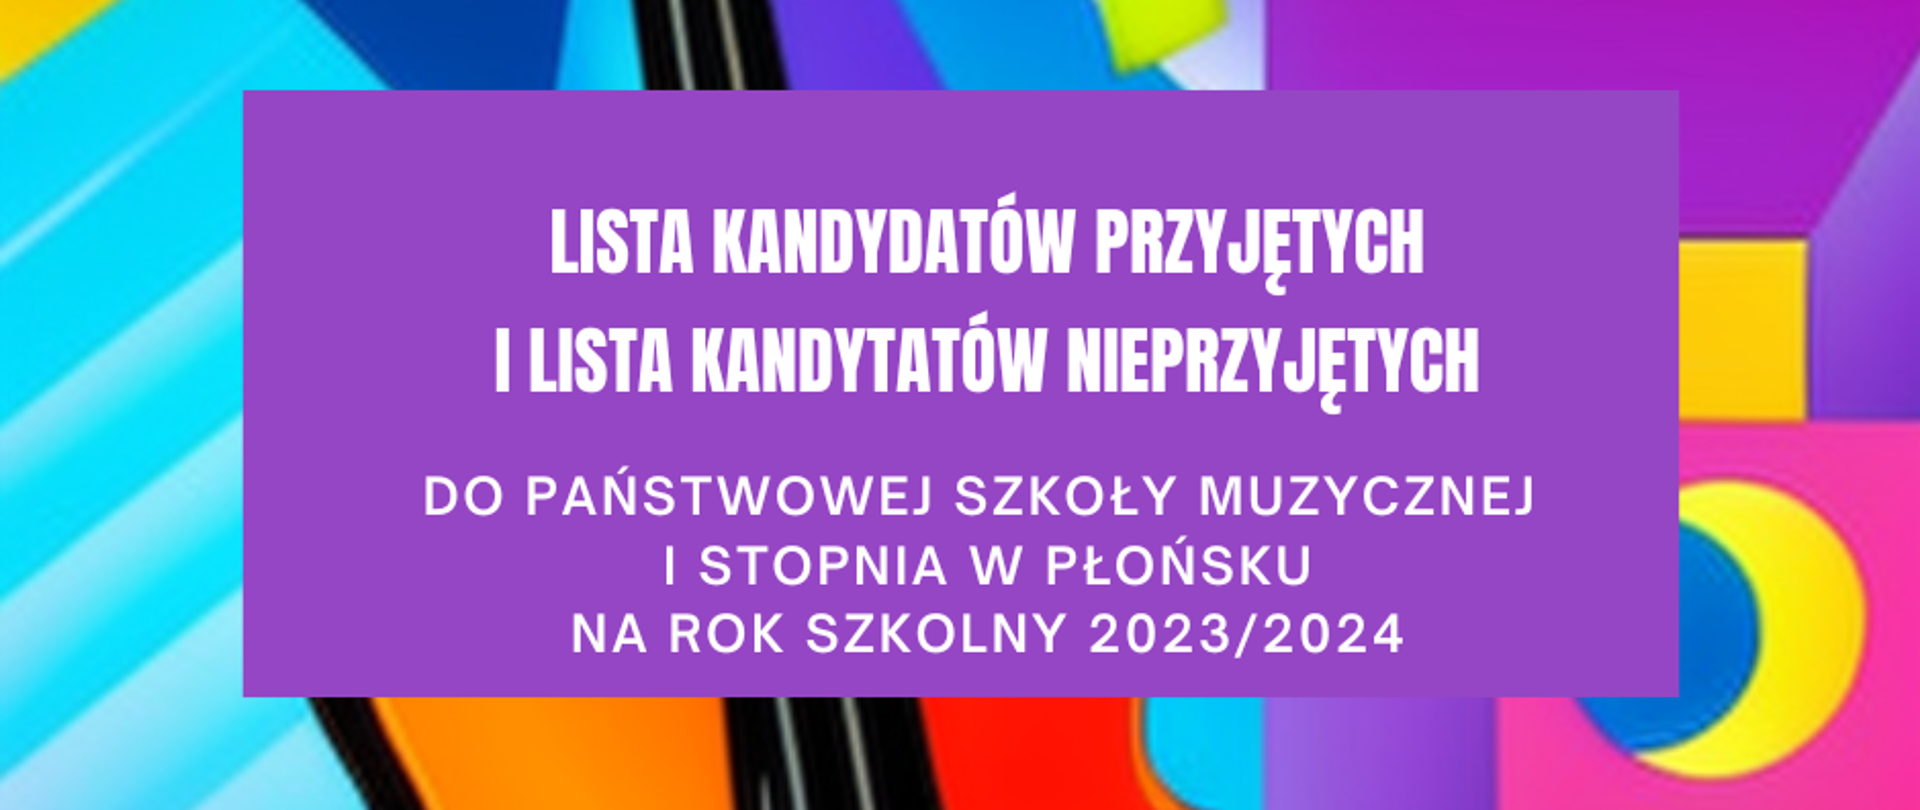 Na tle skrzypiec na wielokolorowym, fioletowo - niebiesko - żółtym tle biały napis: Lista kandydatów przyjętych i nieprzyjętych do Państwowej Szkoły Muzycznej I stopnia w Płońsku na rok szkolny 2023/2024.